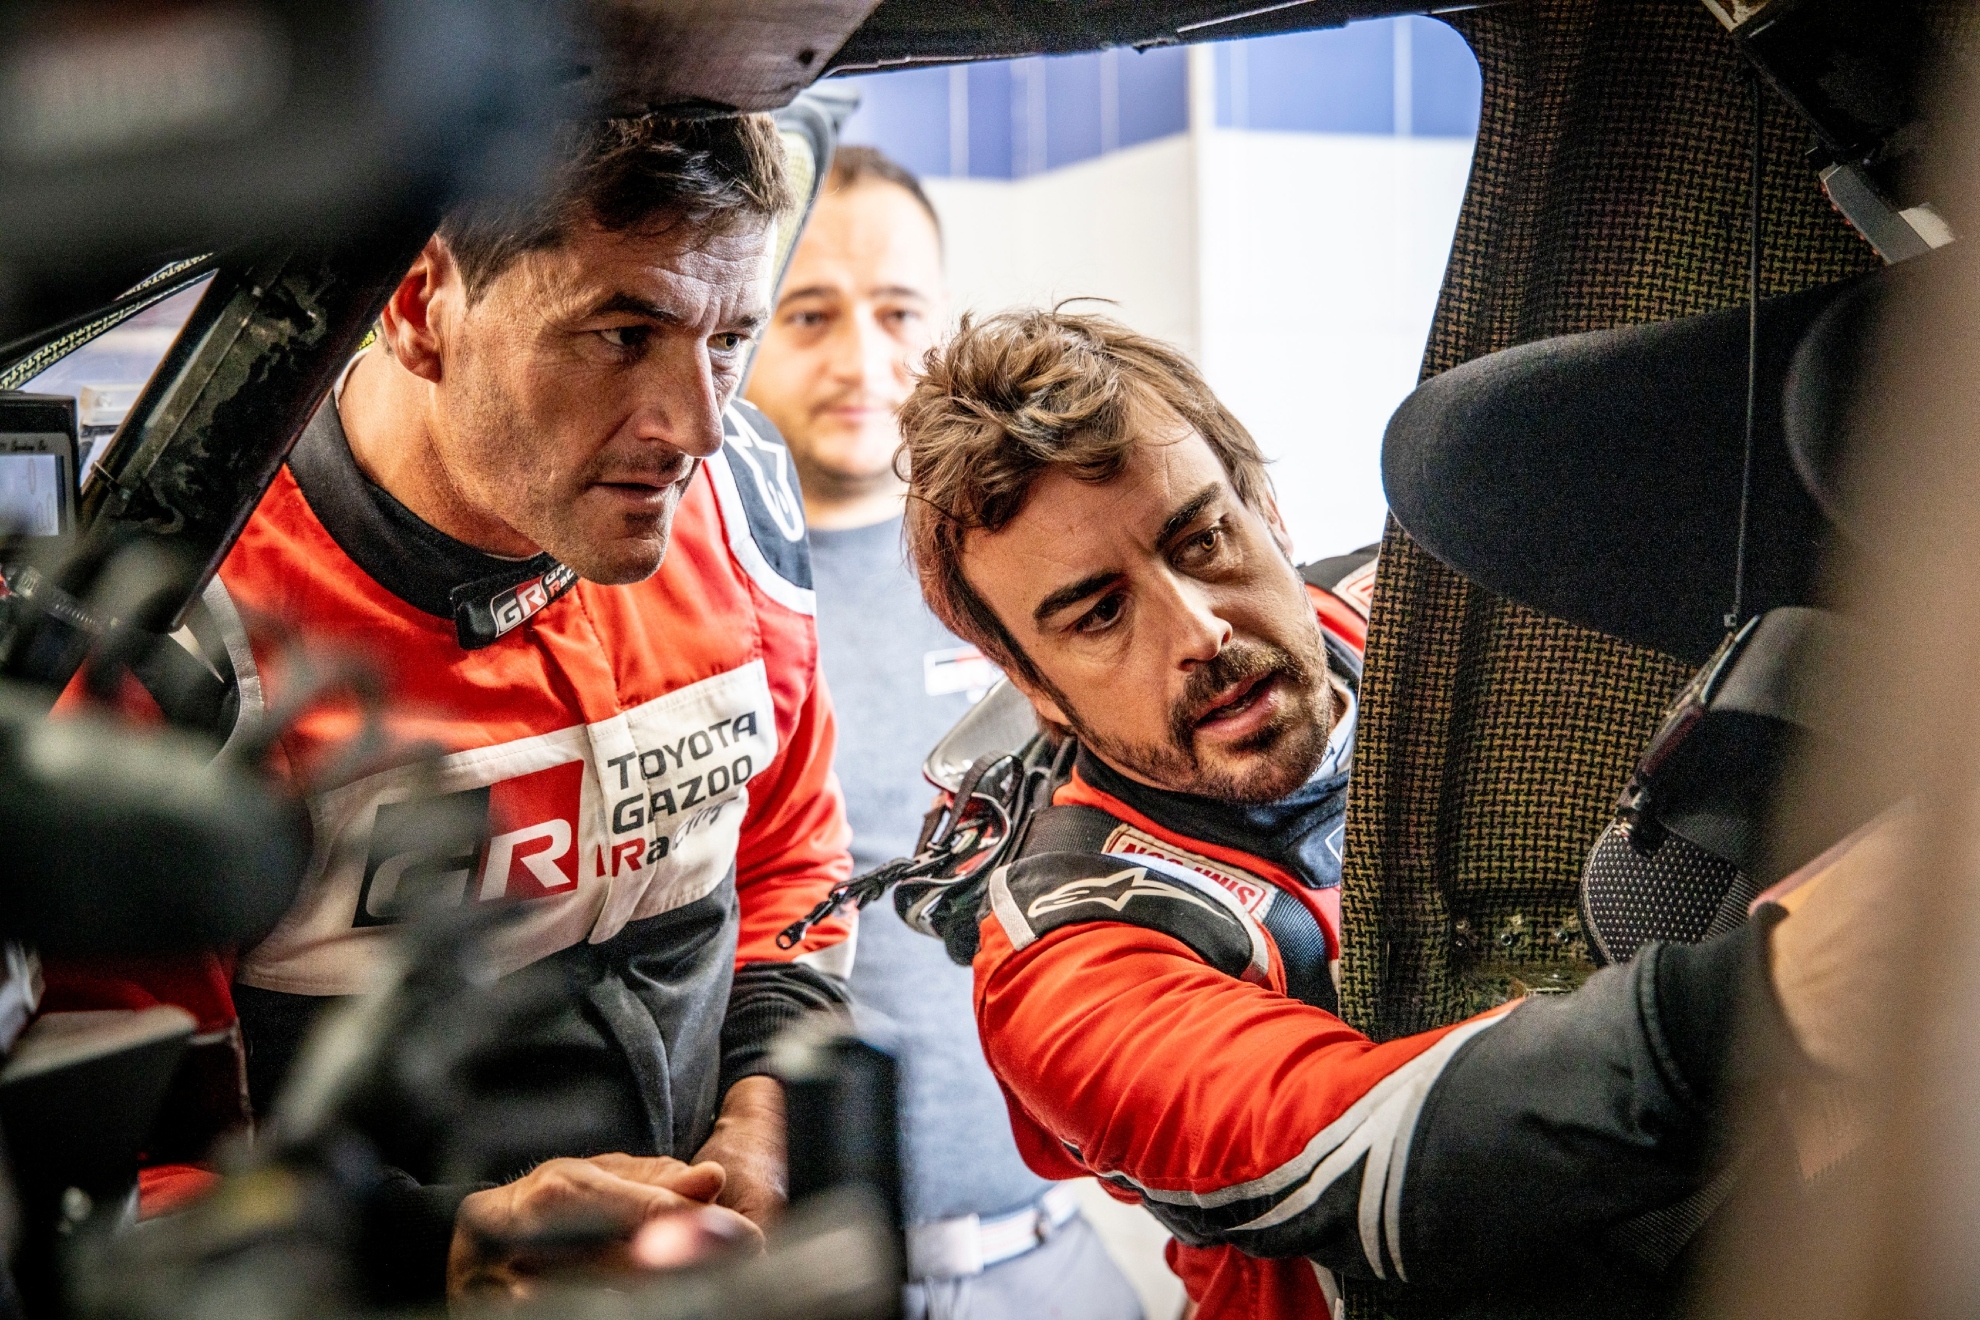 La ltima experiencia de Coma en el Dakar fue... junto a Fernando Alonso.